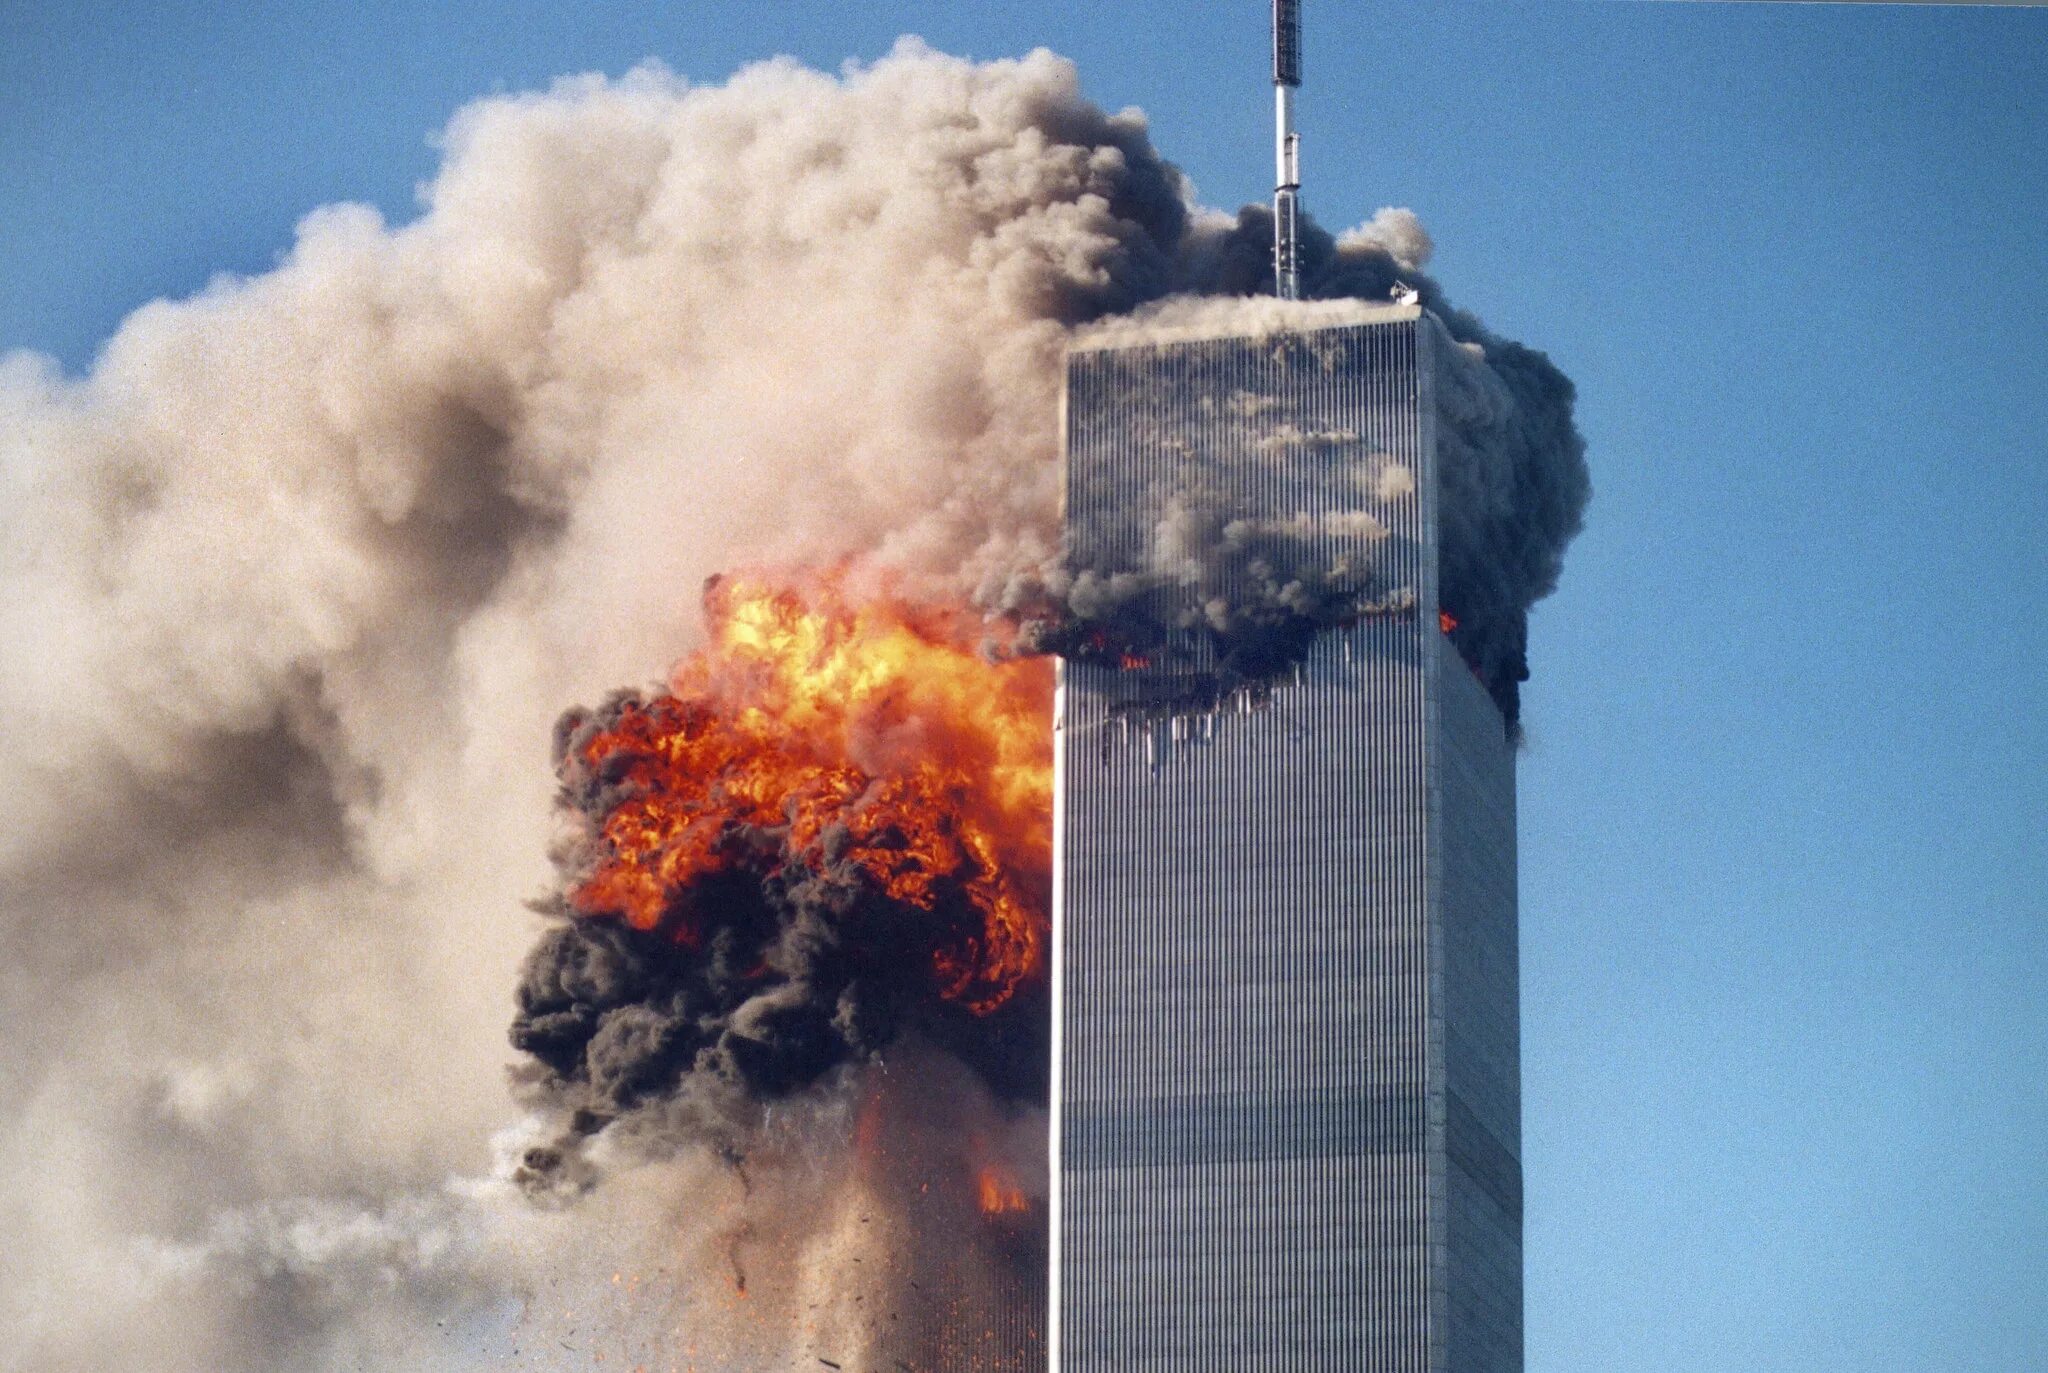 Башни Близнецы 11 сентября. Горящие башни ВТЦ 11 сентября 2001 года. Terrorist attack in russia